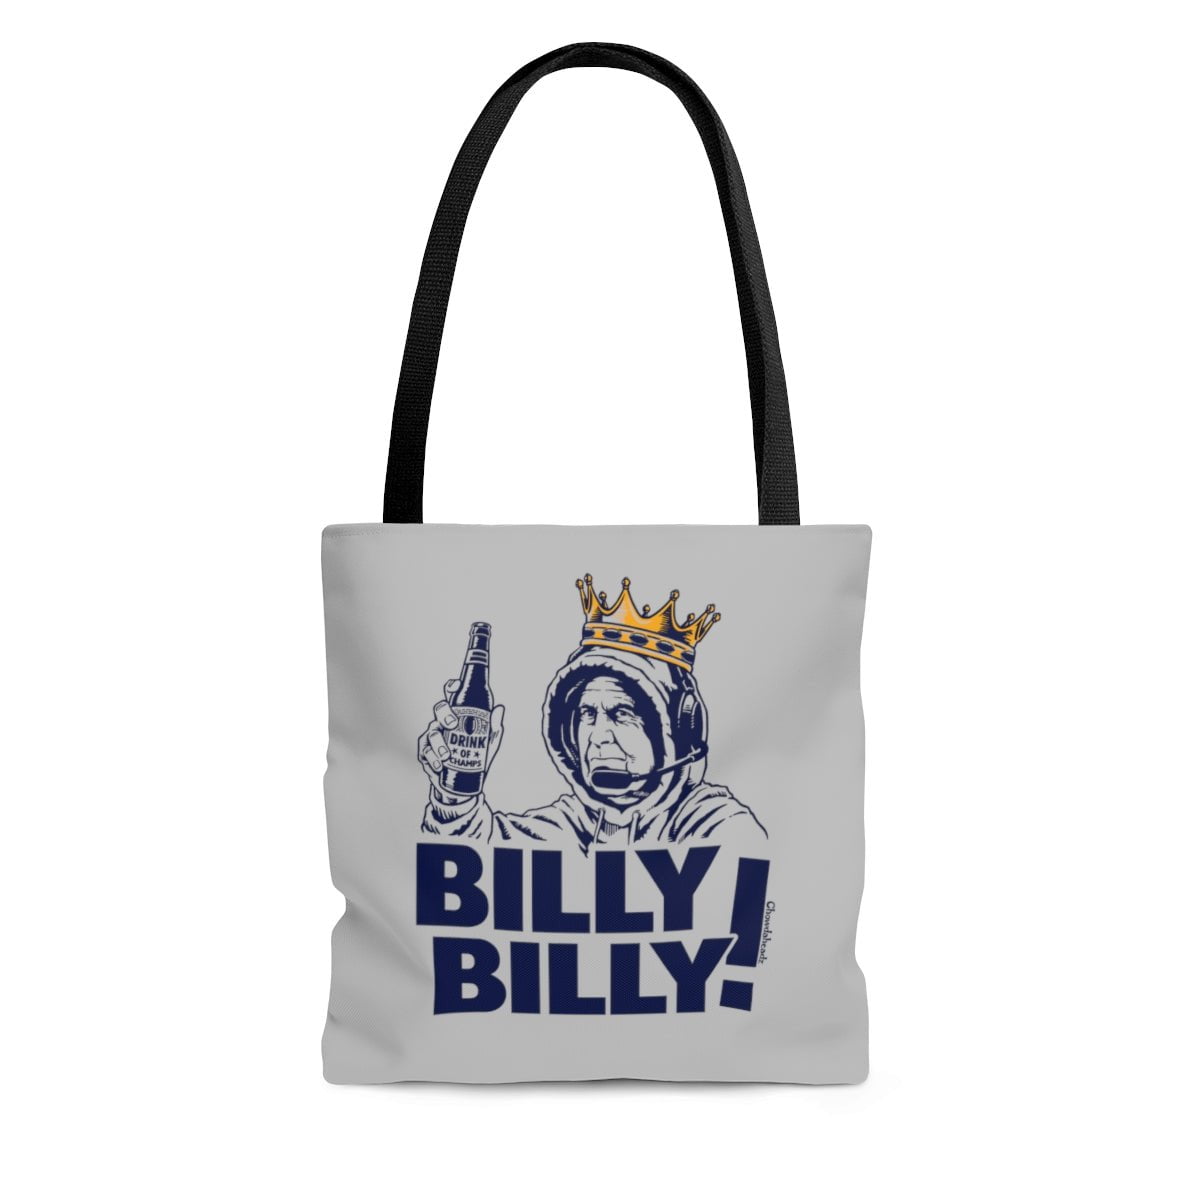 Billy Billy! Tote Bag - Chowdaheadz